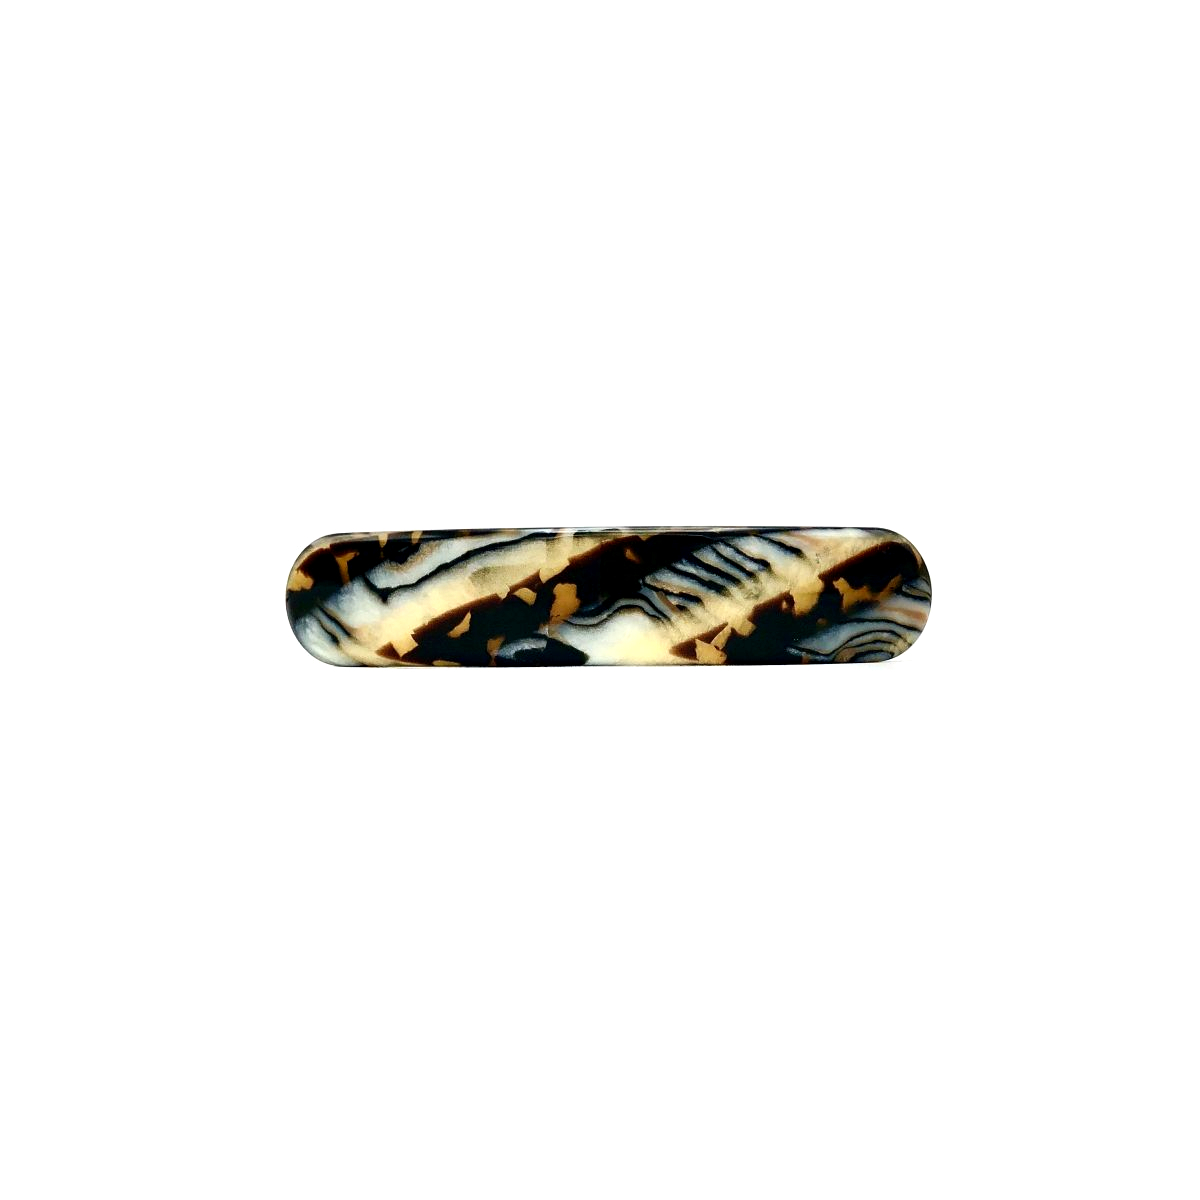 Haarspange gold/schwarz - mittel, paralleloval - 10 cm